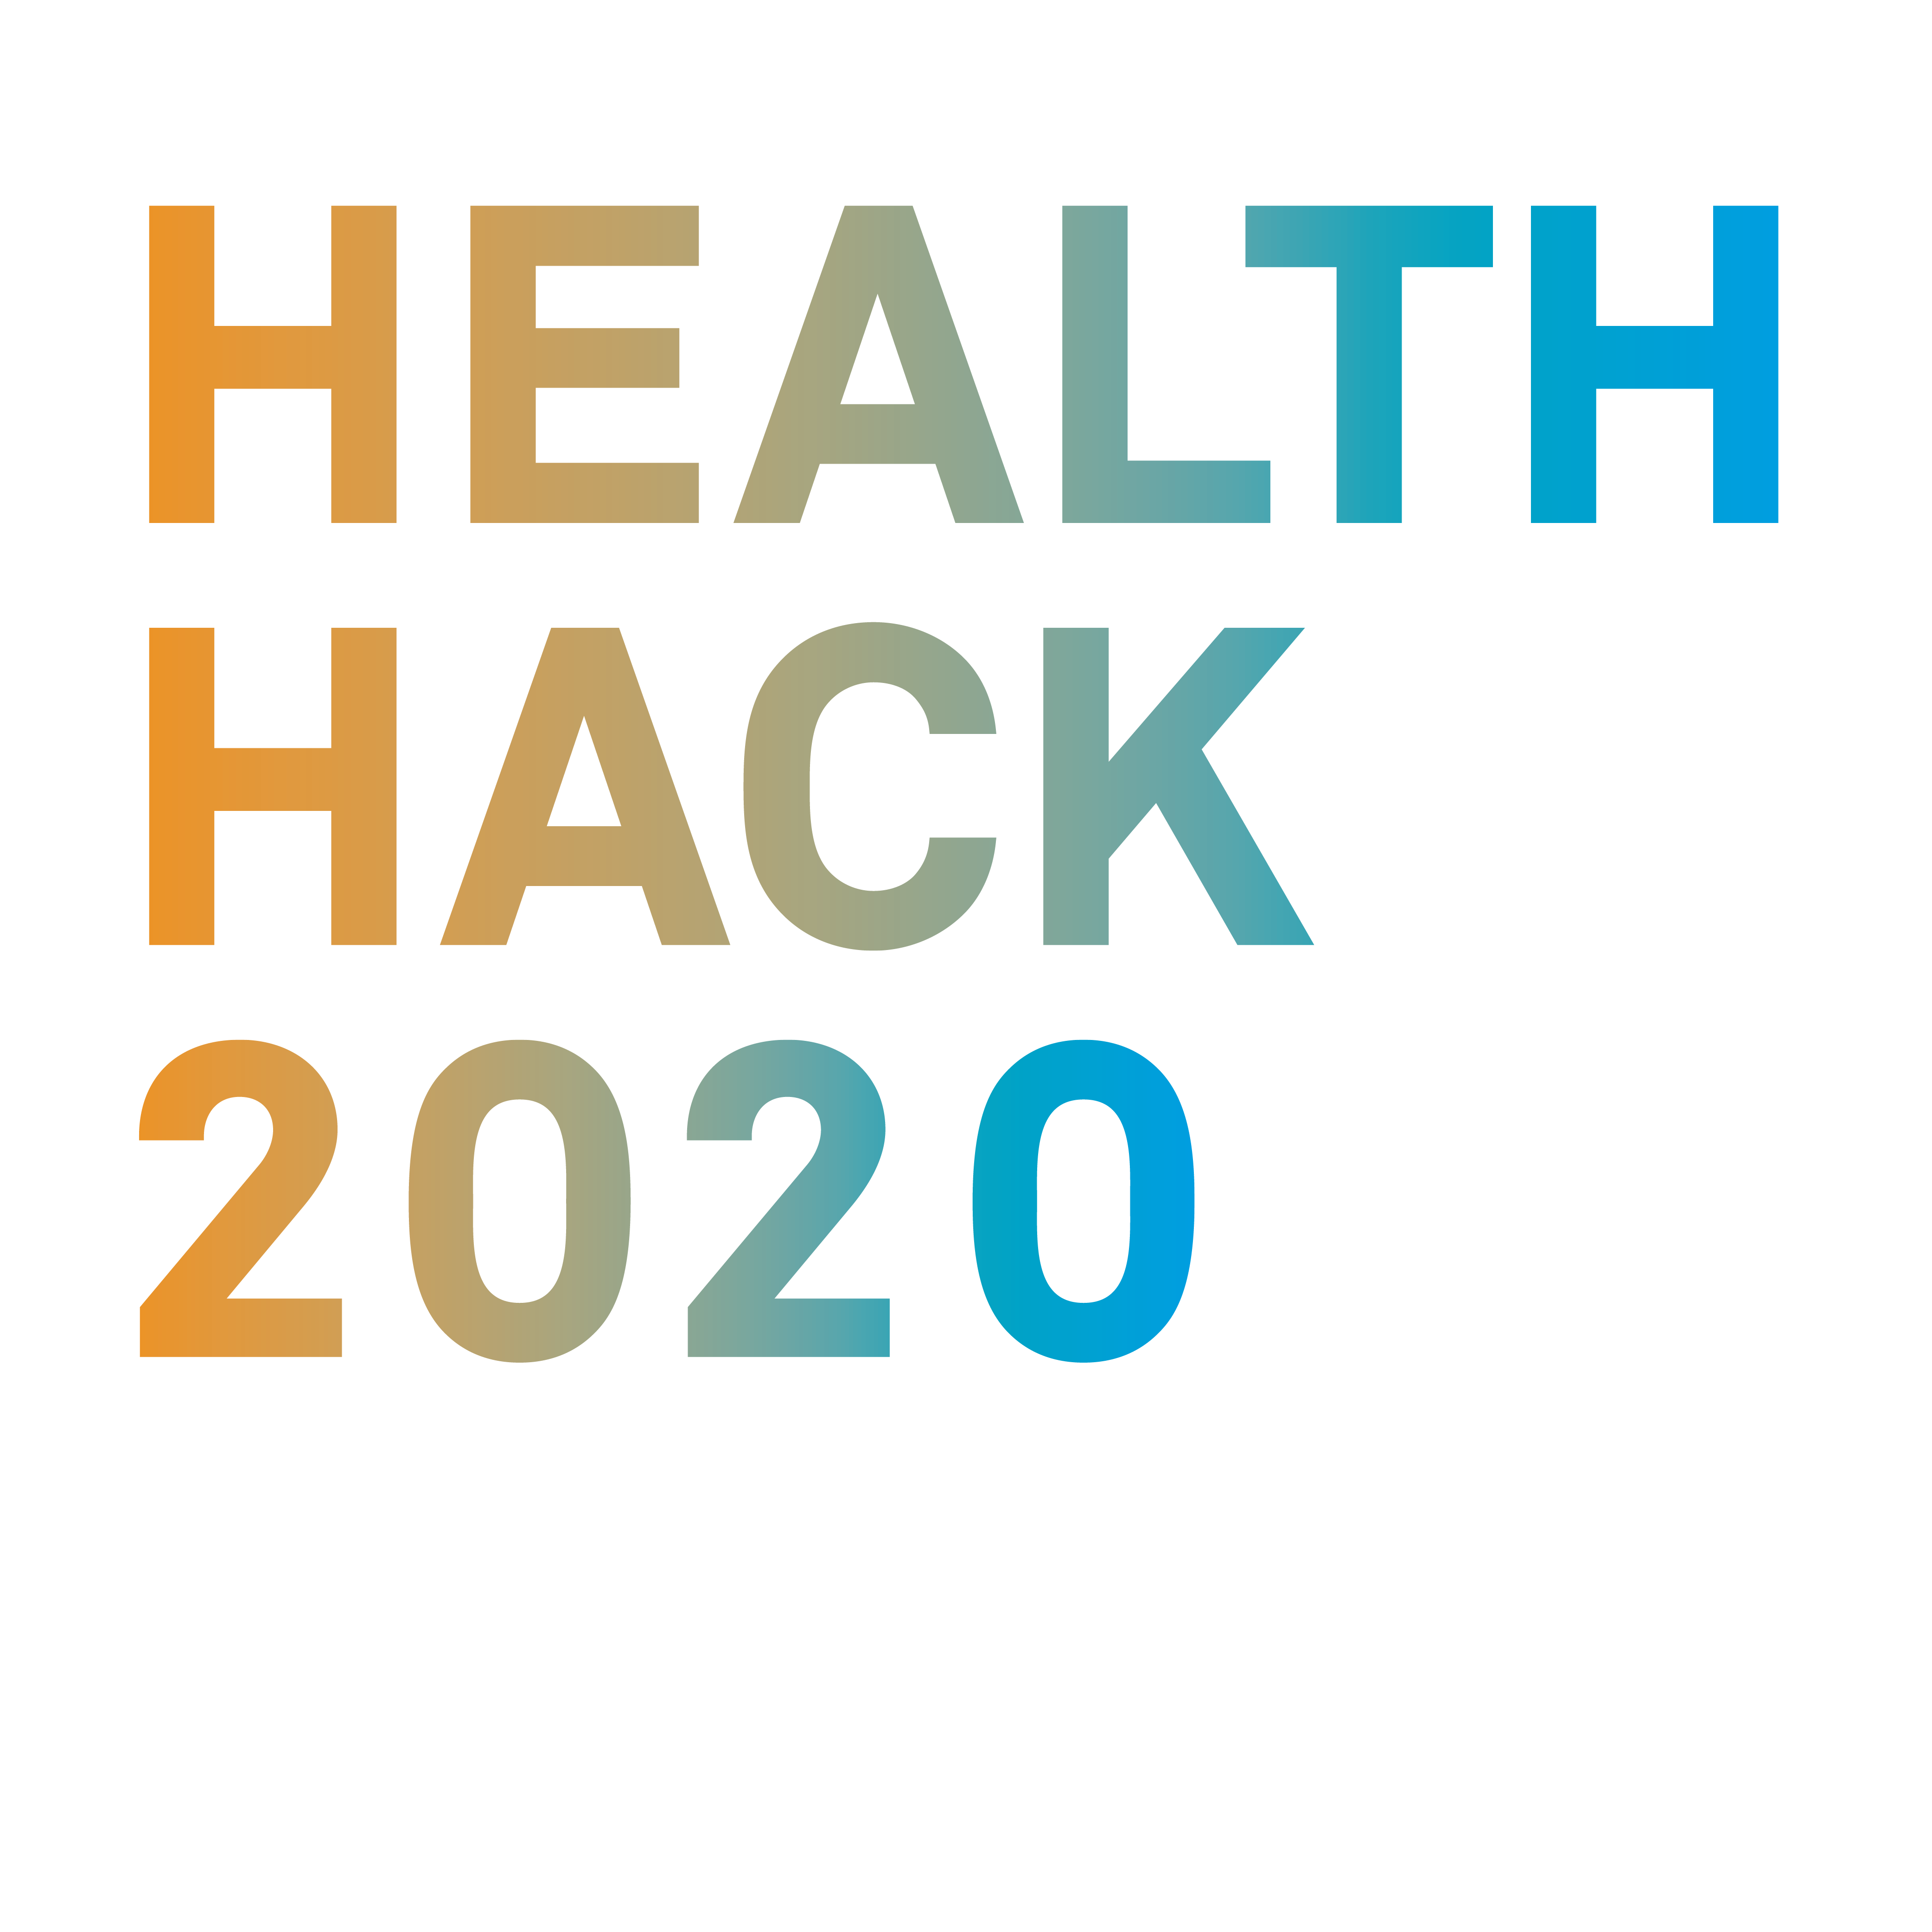 PLRI ist Premiumpartner des HealthHack 2020